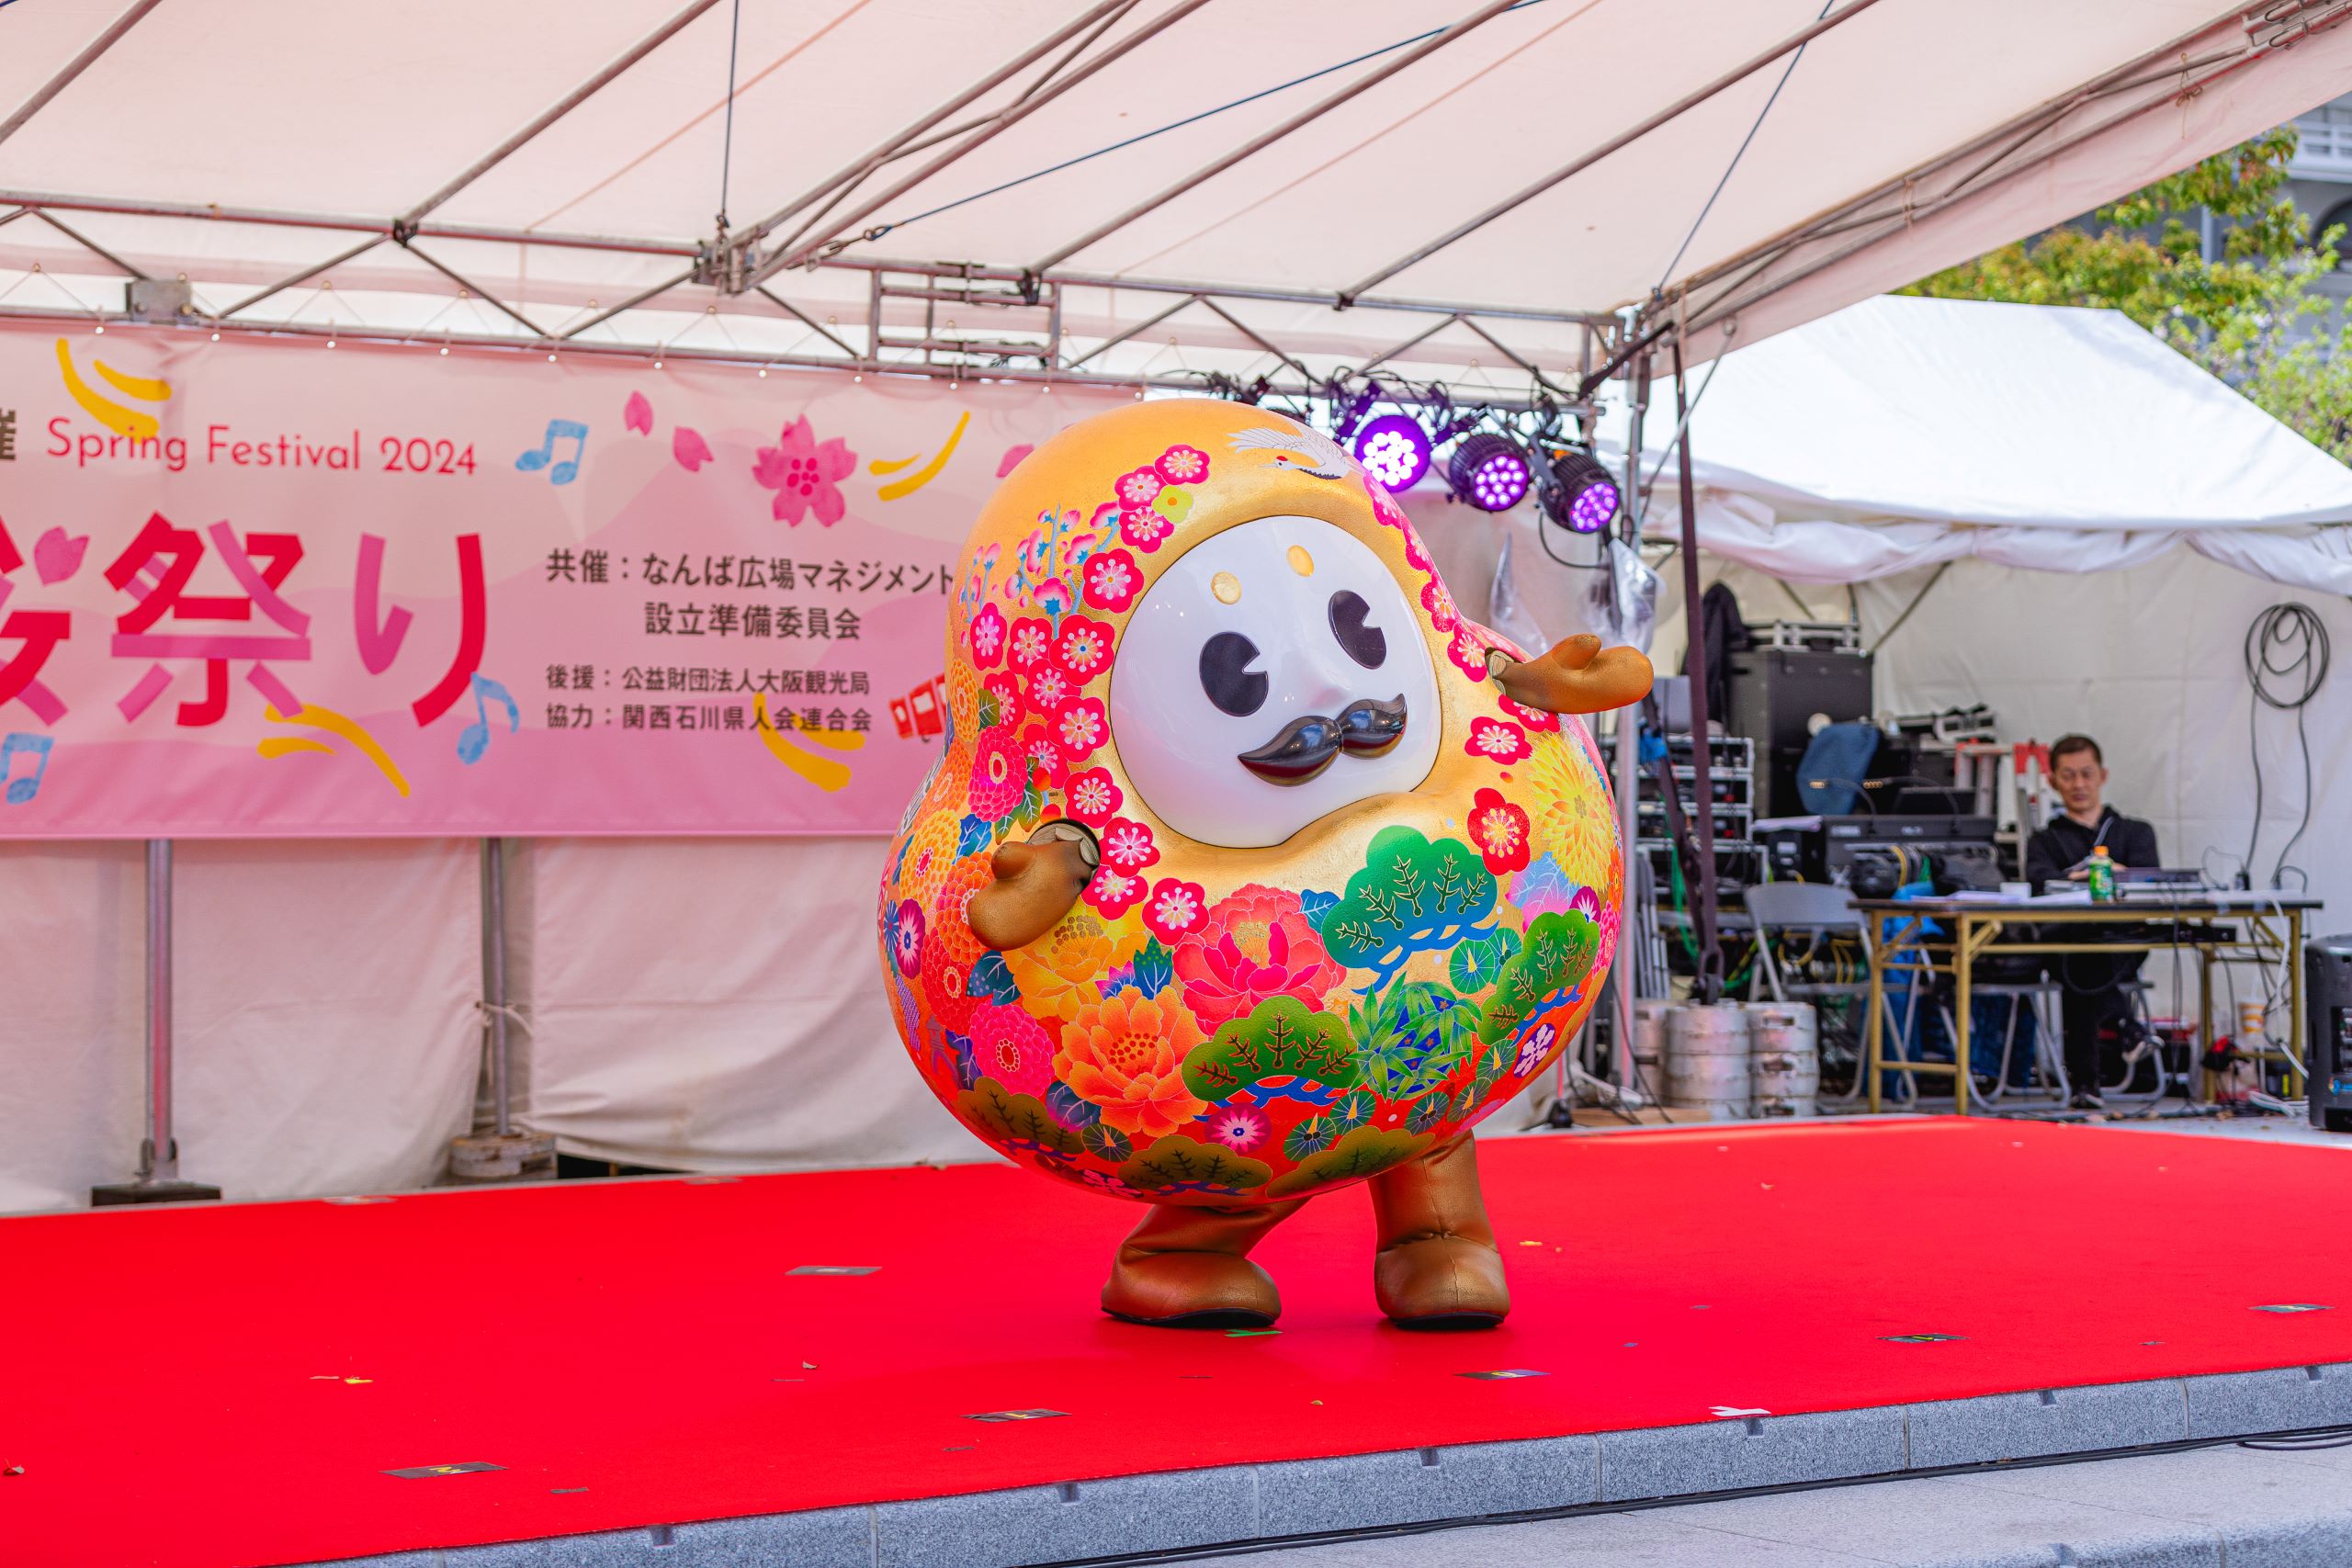 4月になんば広場で開催された「復興桜祭り」を通じて信和グループは石川県へ義援金3,274,532円を贈呈しました。のサブ画像4_石川県観光PRマスコットキャラクター ひゃくまんさん